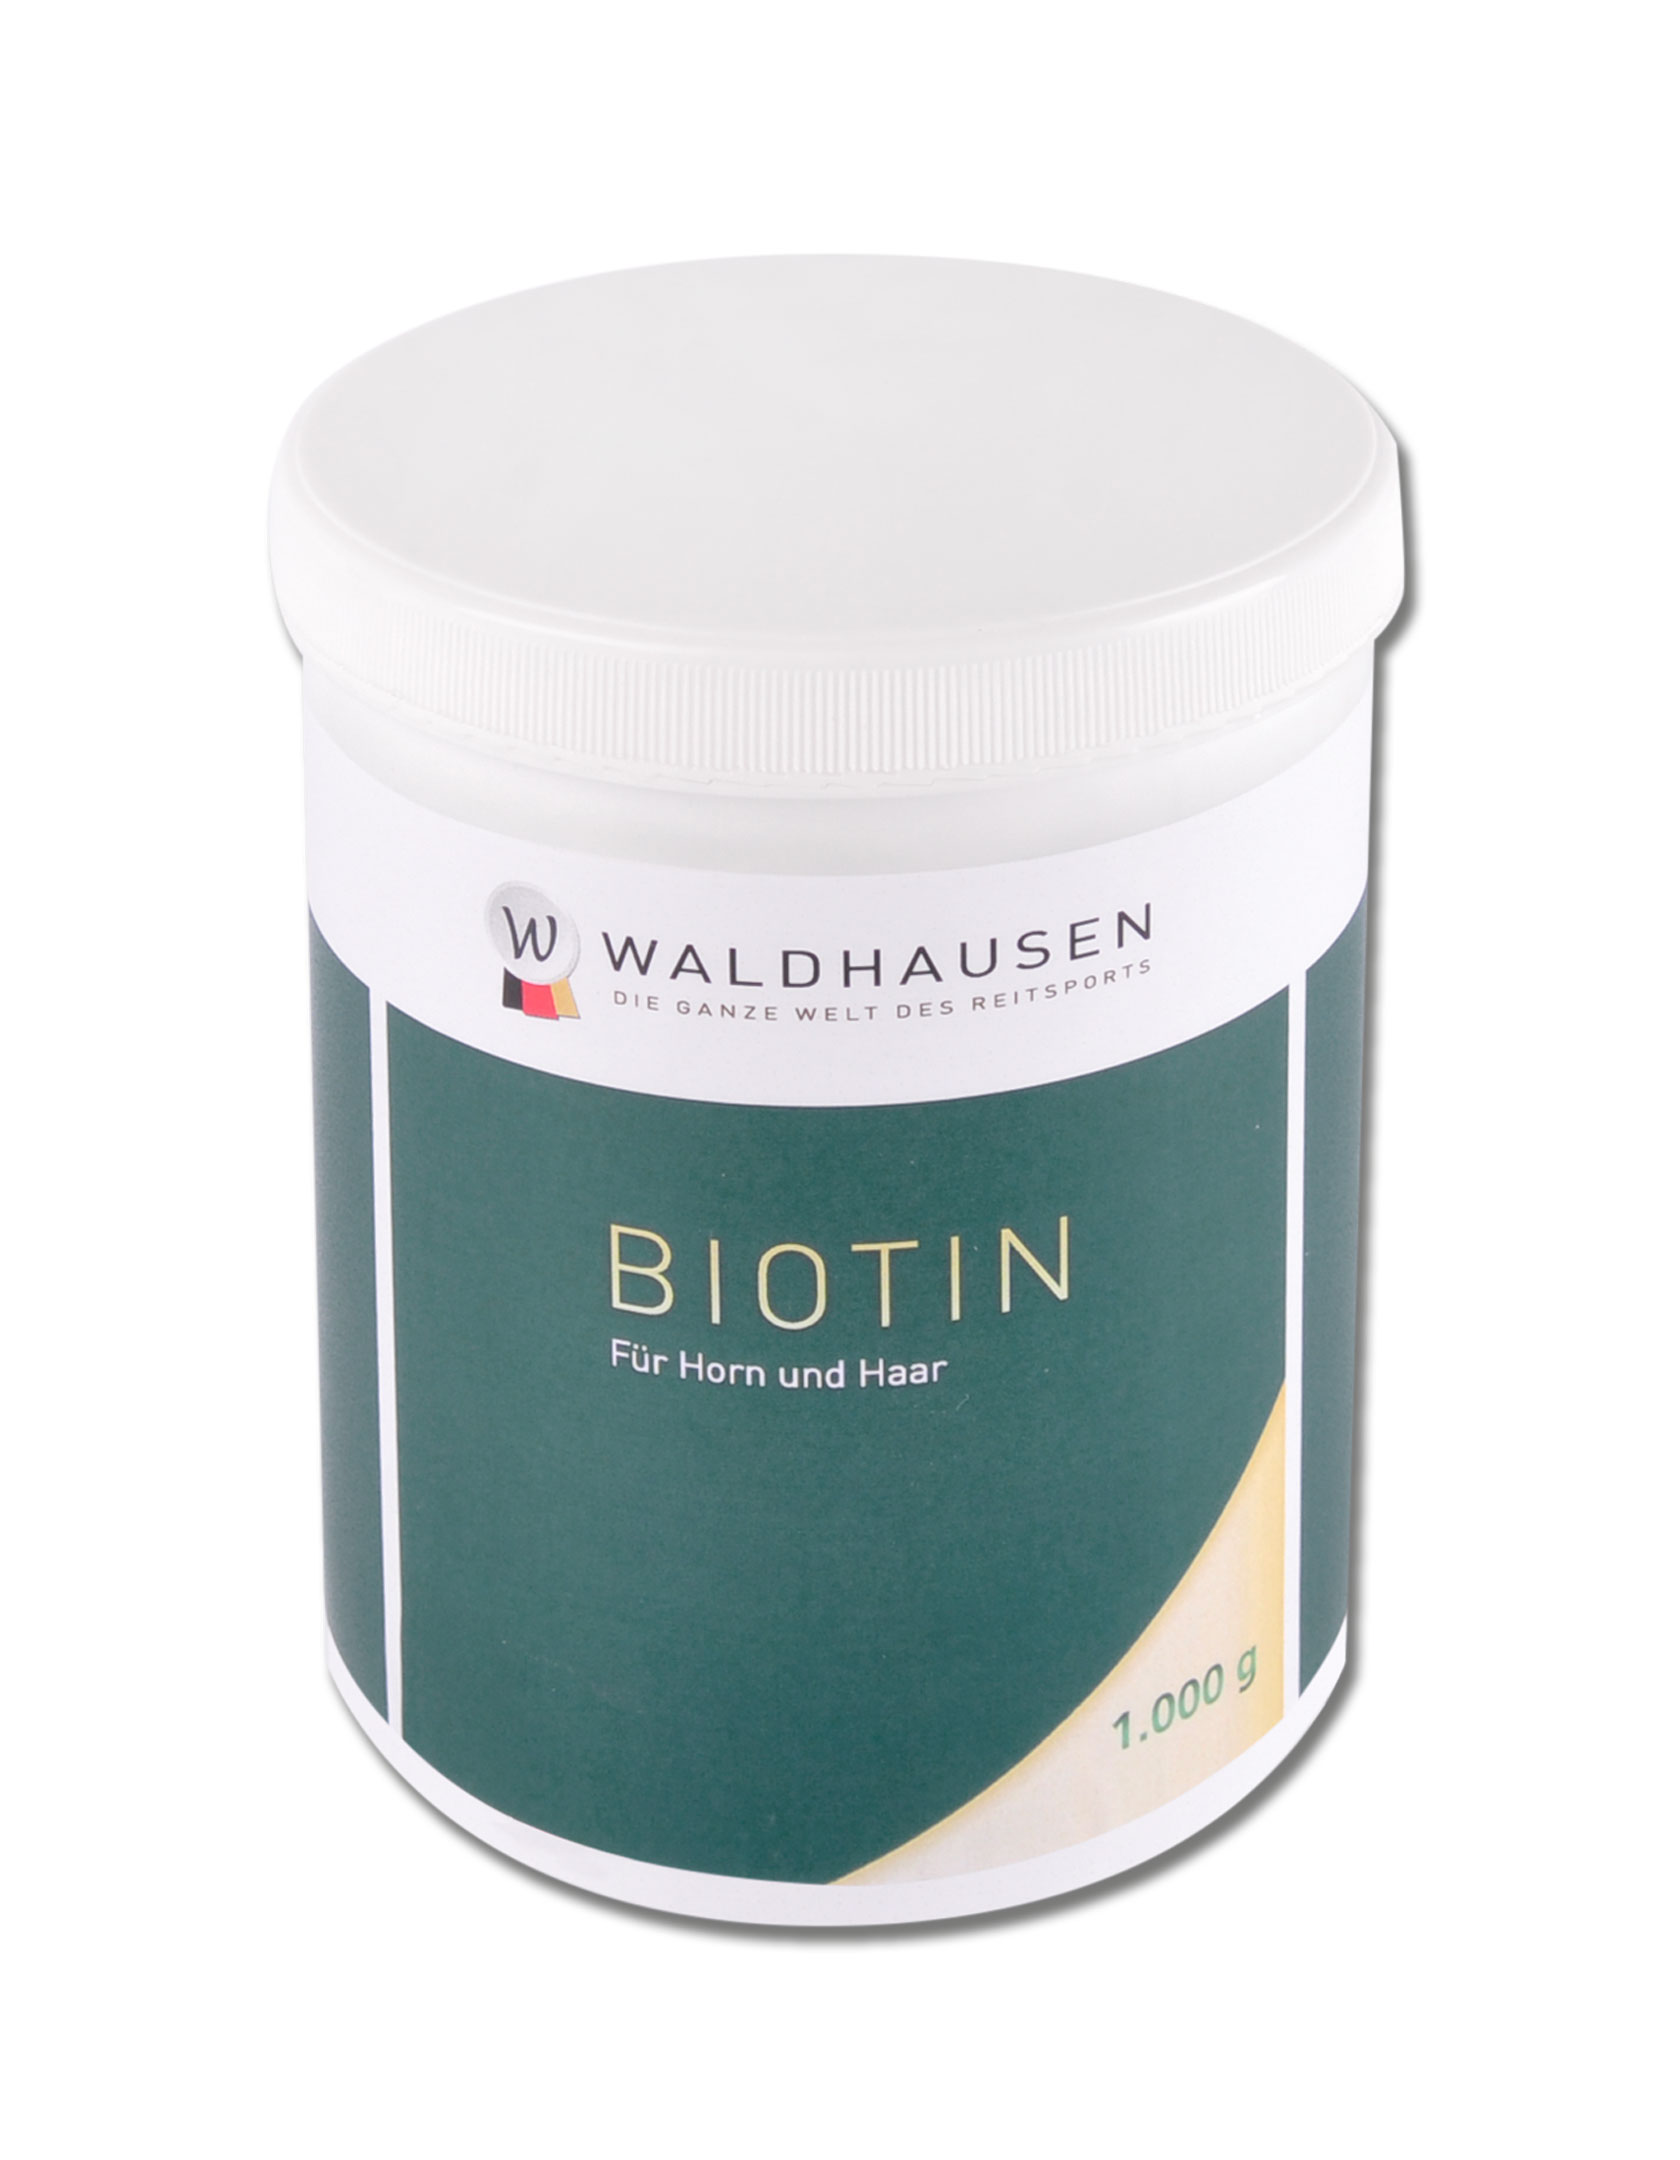 WALDHAUSEN Biotin - für Horn und Haar